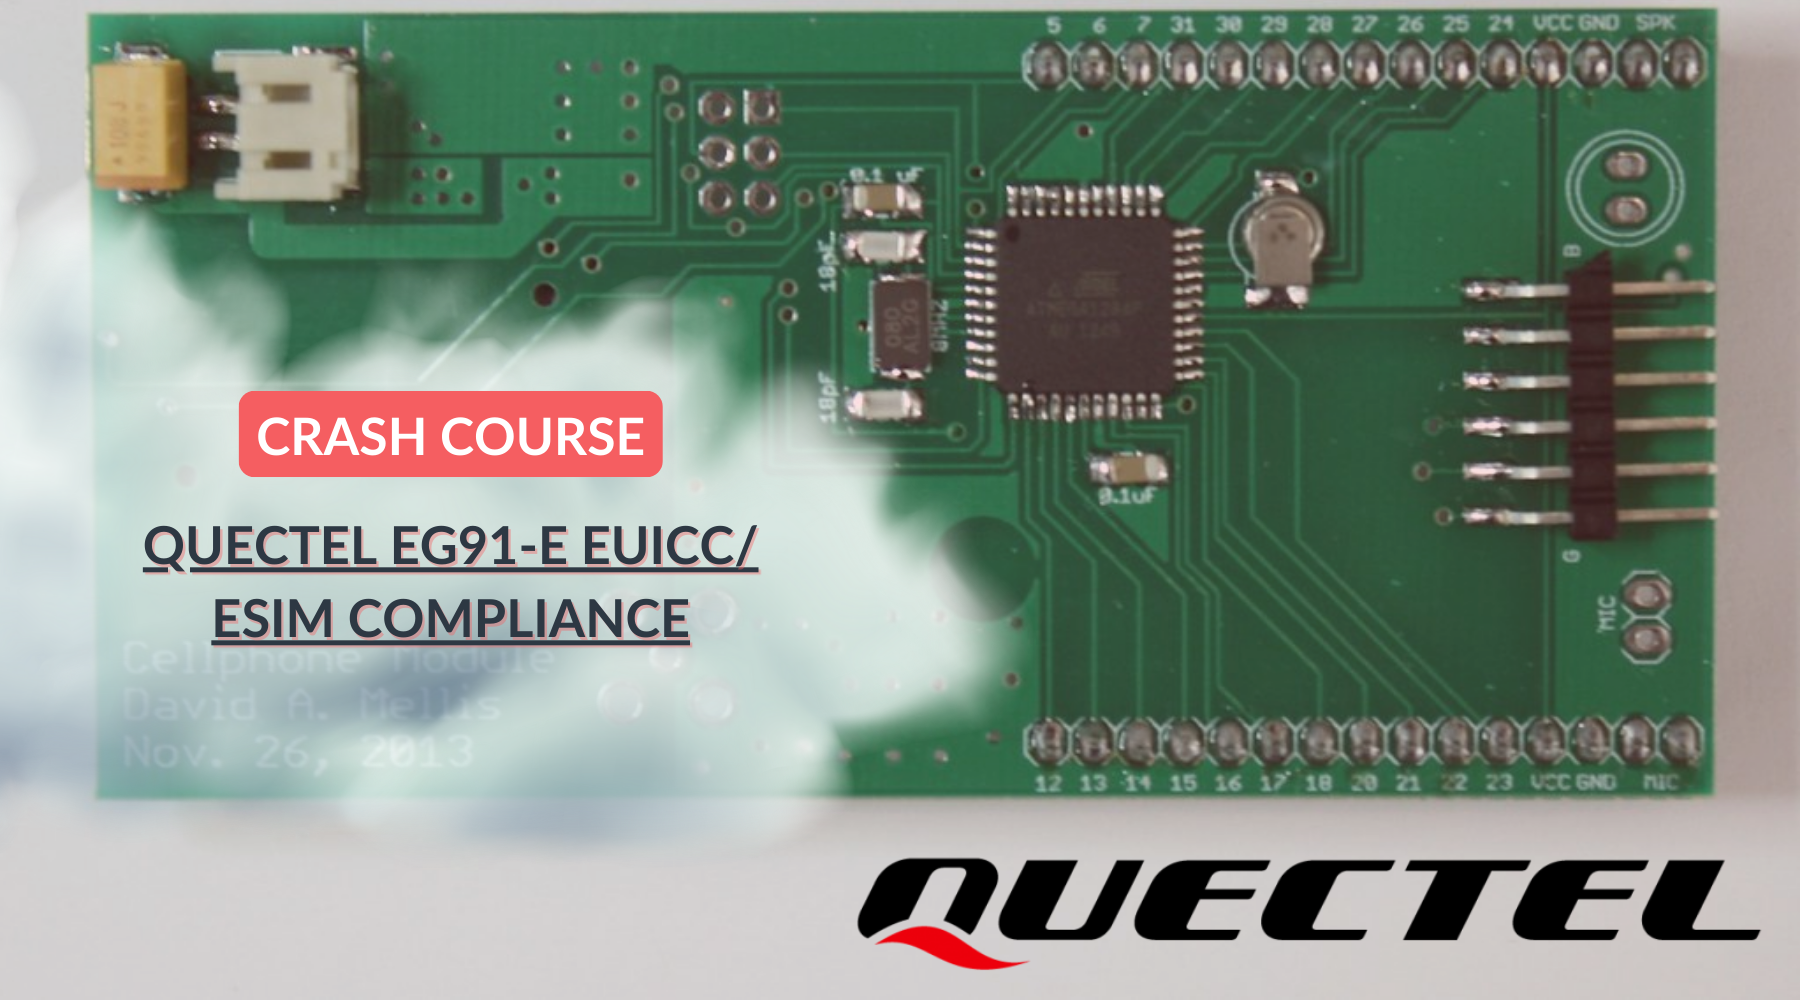 QUECTEL EG91-E EUICC/ ESIM COMPLIANCE with ConnectedYou